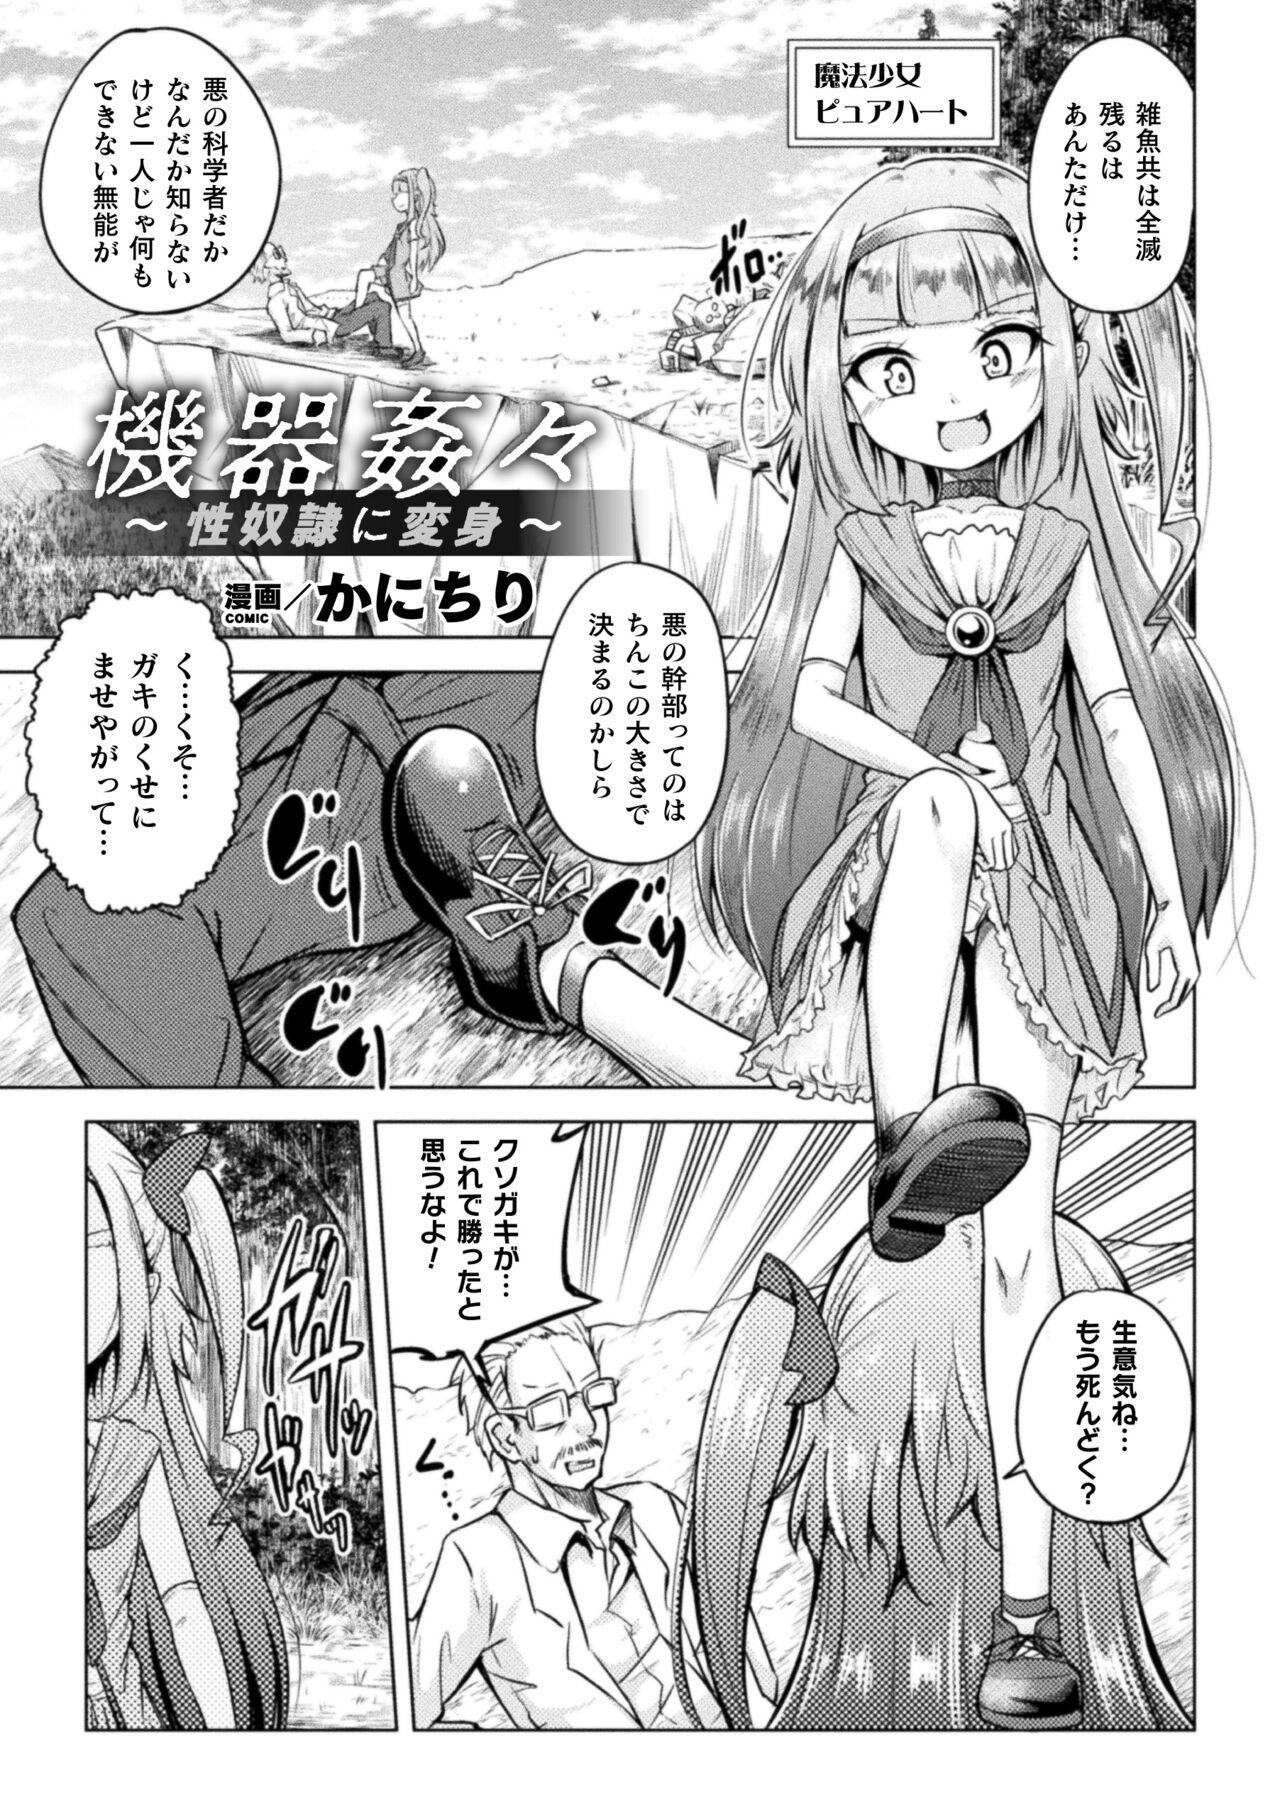 2D Comic Magazine Mesugaki Henshin Heroine Kikaikan Seisai Hijou no Wakarase Machine de Renzoku Loli Acme Vol. 3 22